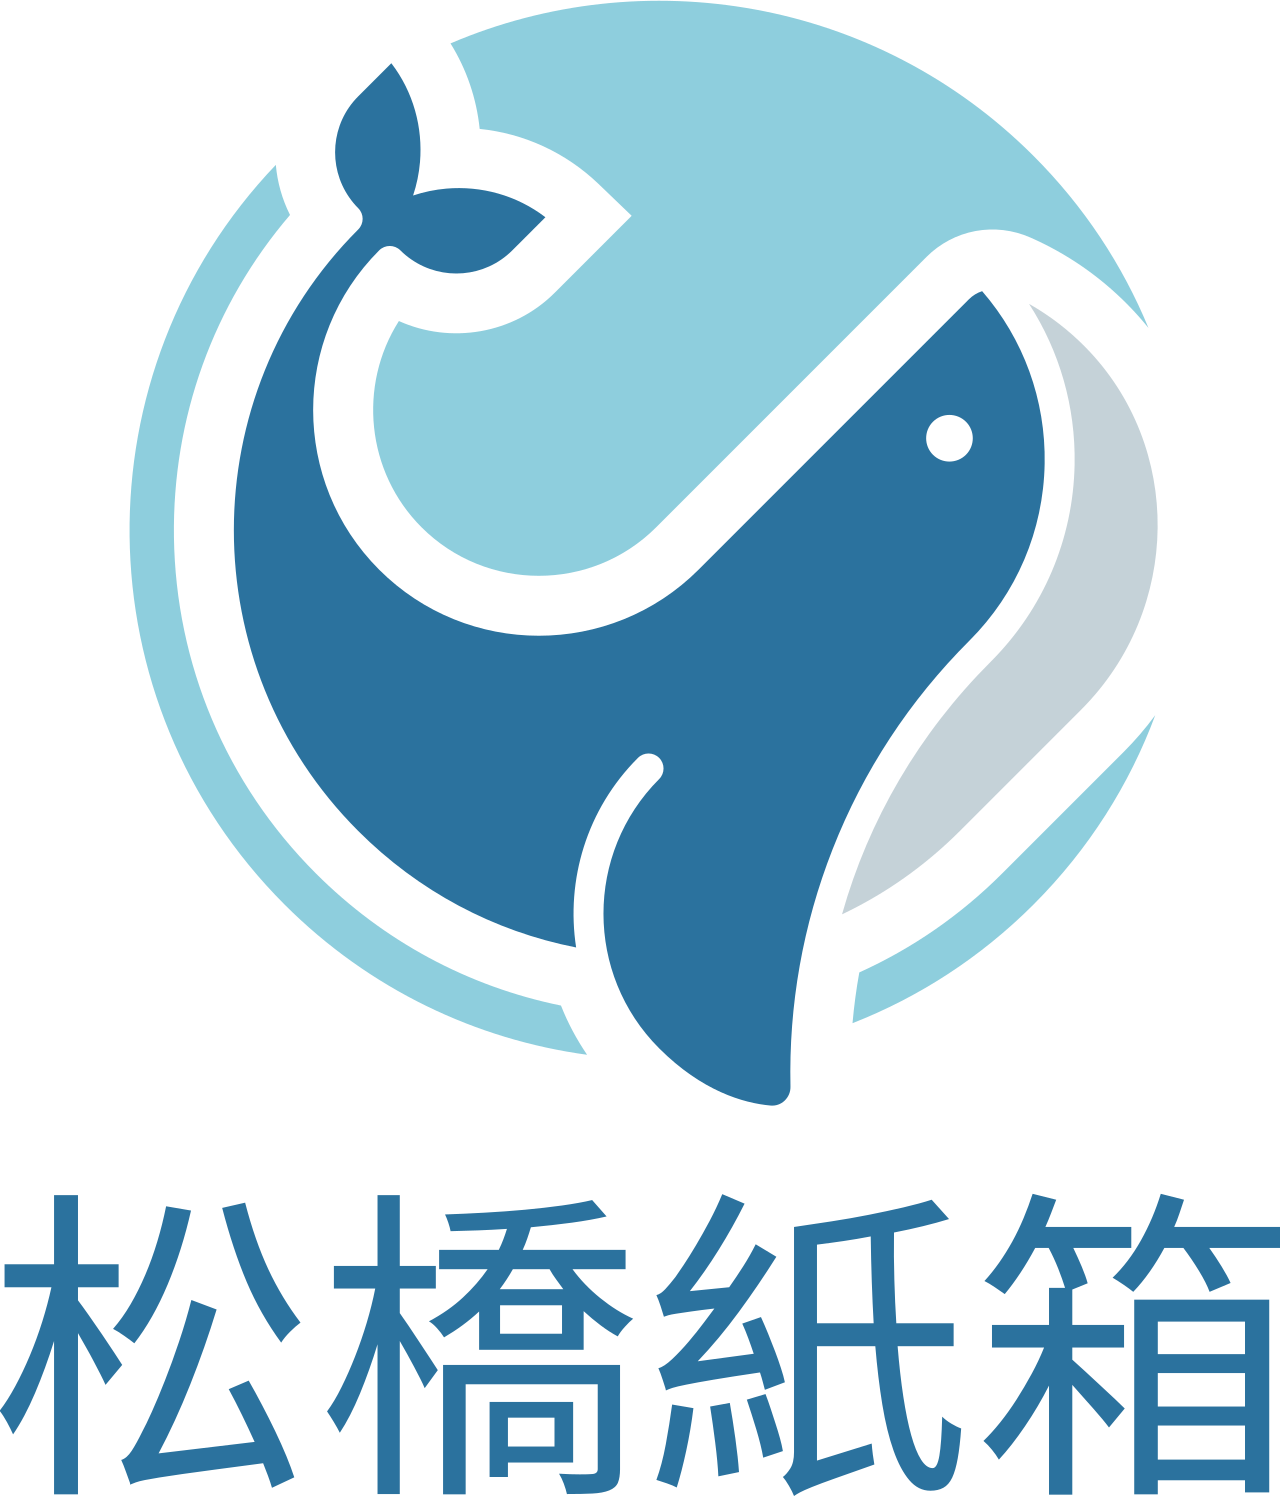 松橋紙箱's logo